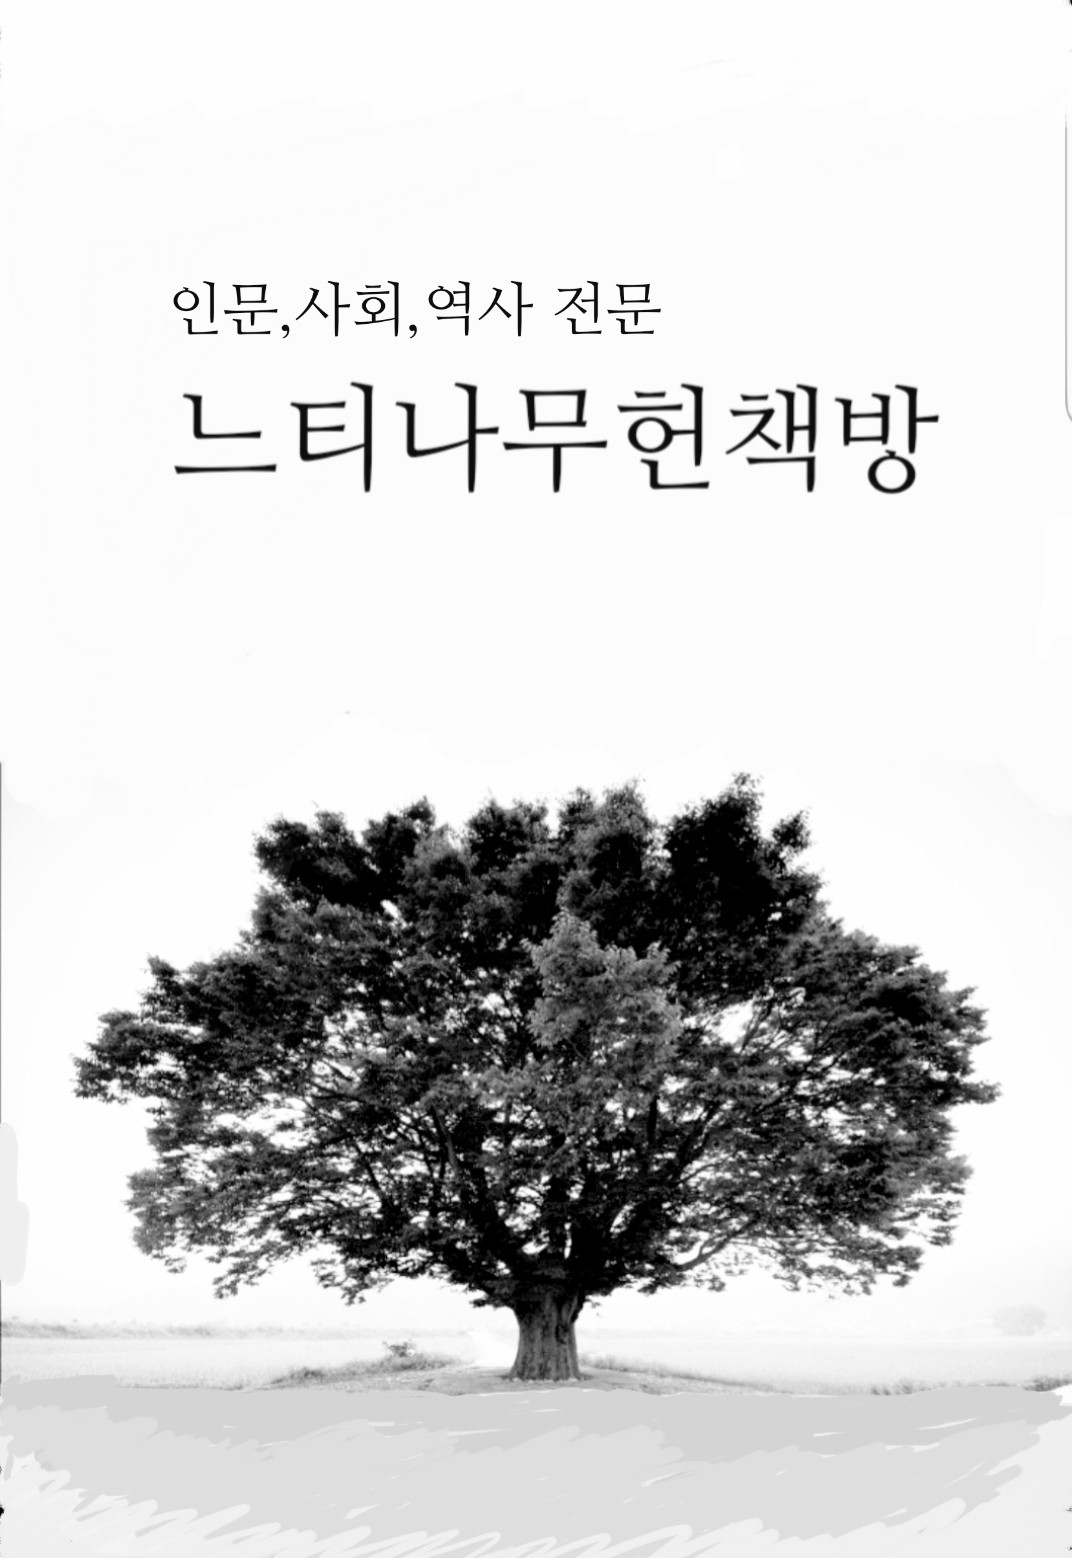 향토인물열전 - 전남 장흥군 (알가2코너)